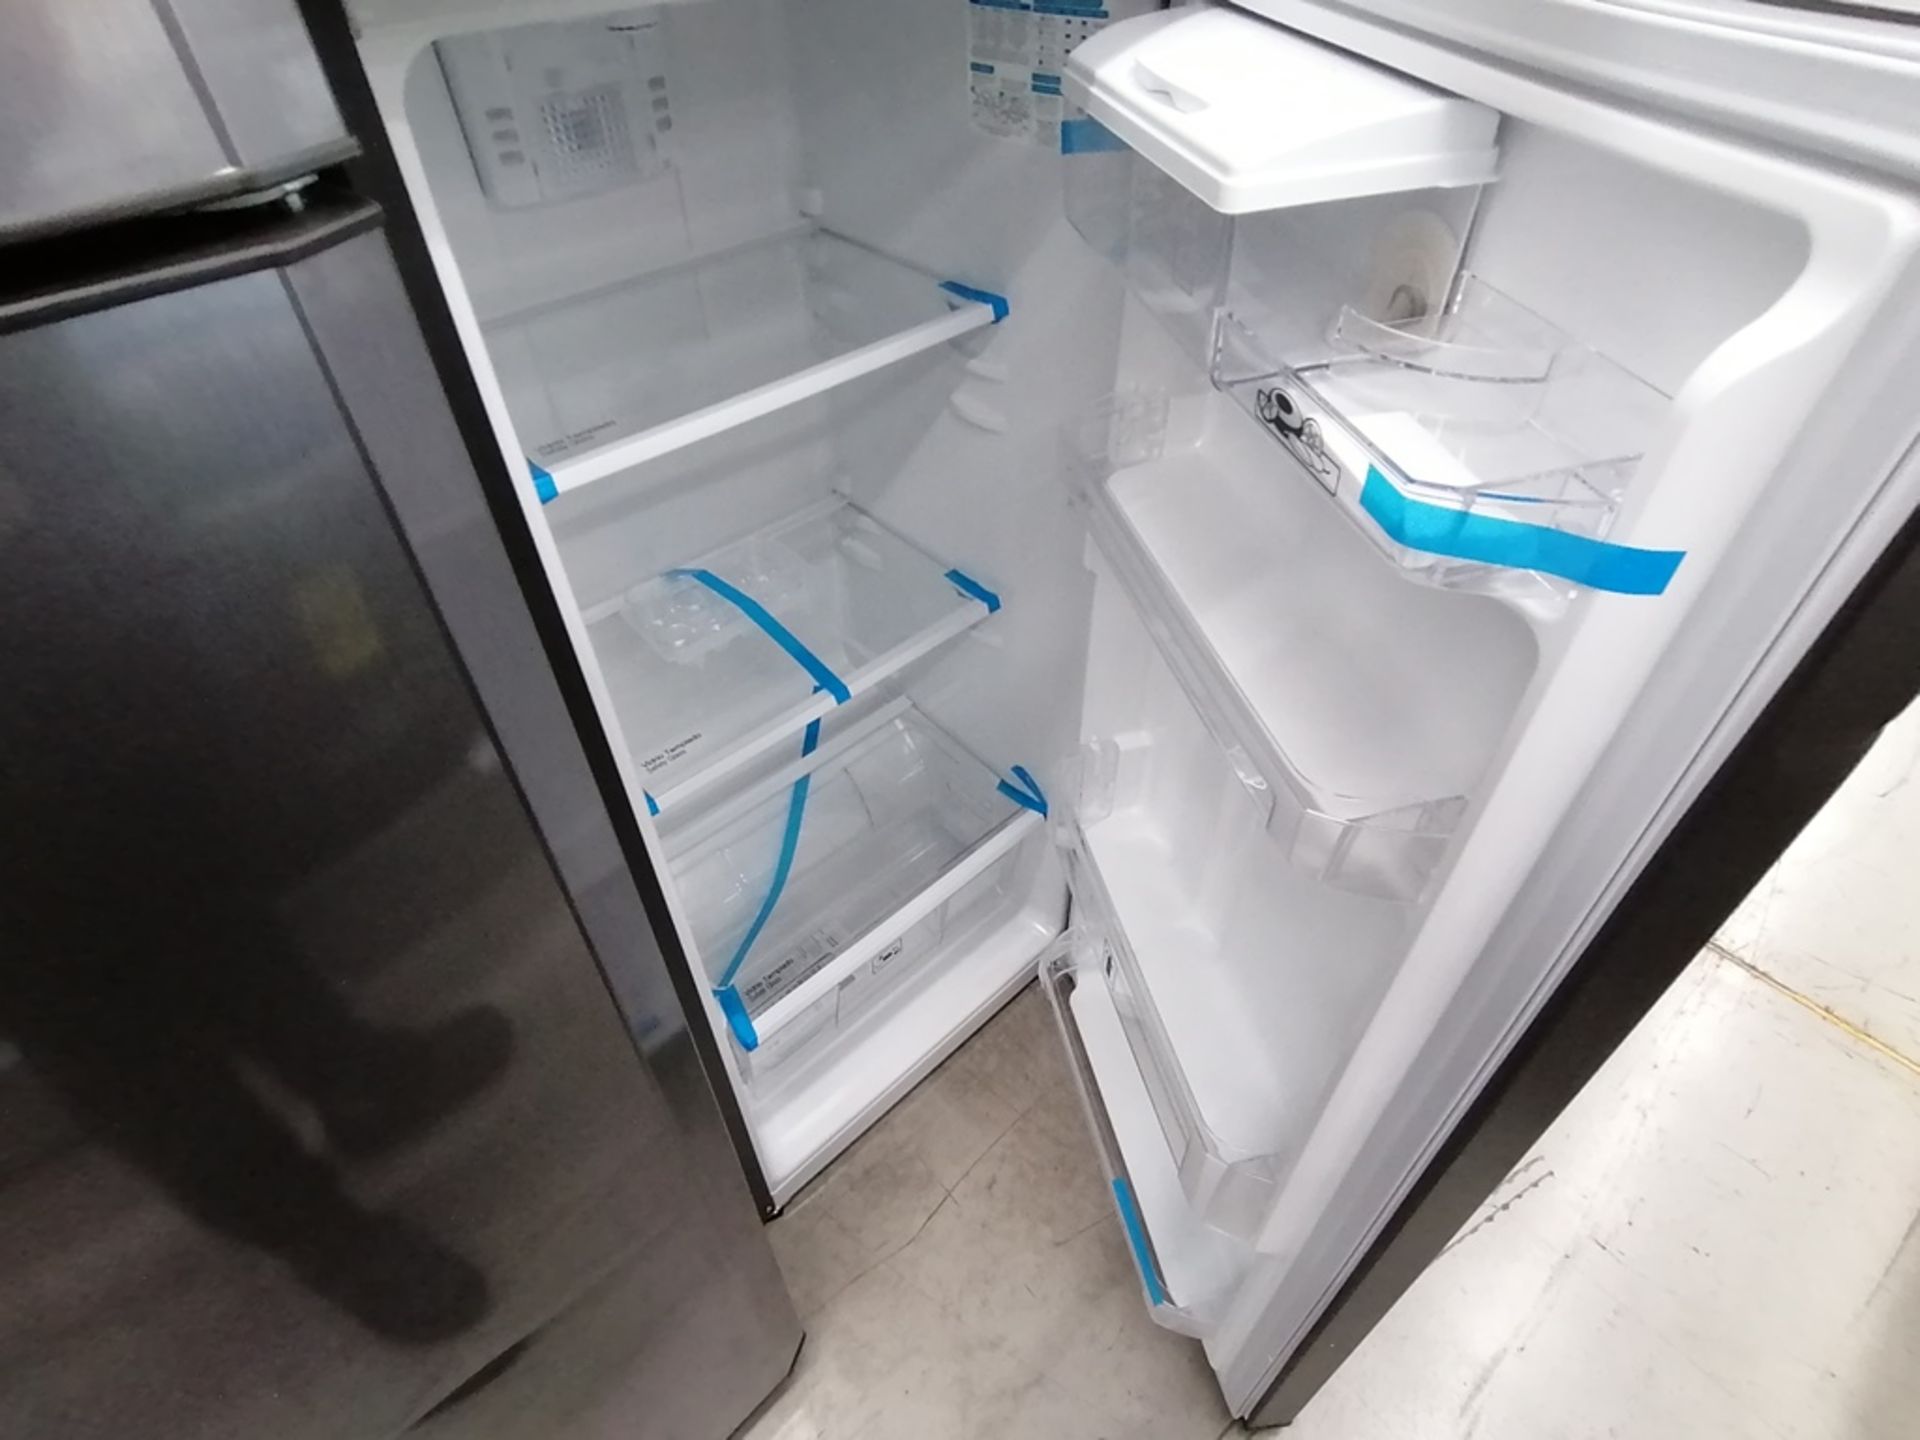 Lote de 2 refrigeradores incluye: 1 Refrigerador con dispensador de agua, Marca Mabe, Modelo RMA300 - Image 12 of 15